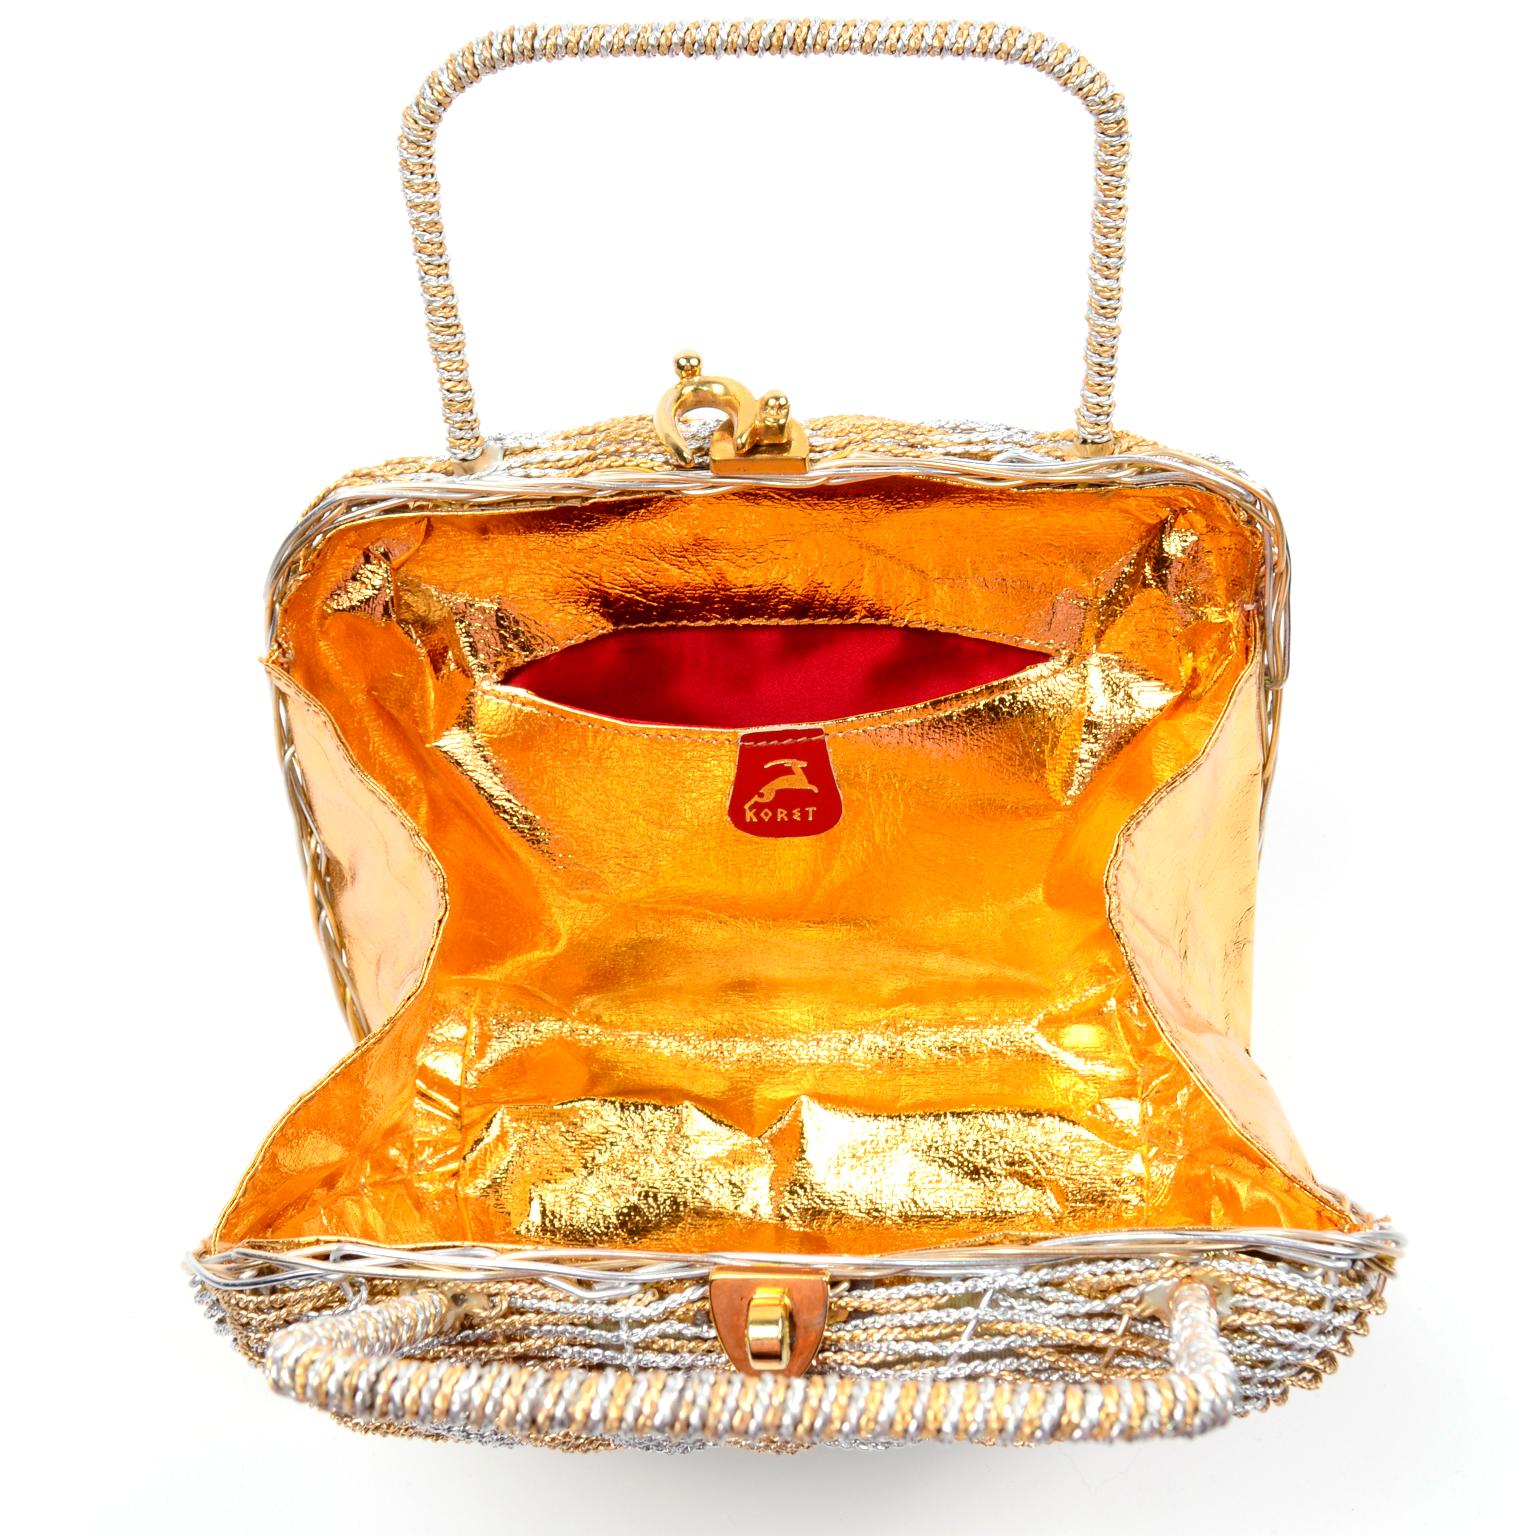 Beige 1960s Koret Vintage Bag Woven Gold & Silver Basket Handbag W Gold Hardware